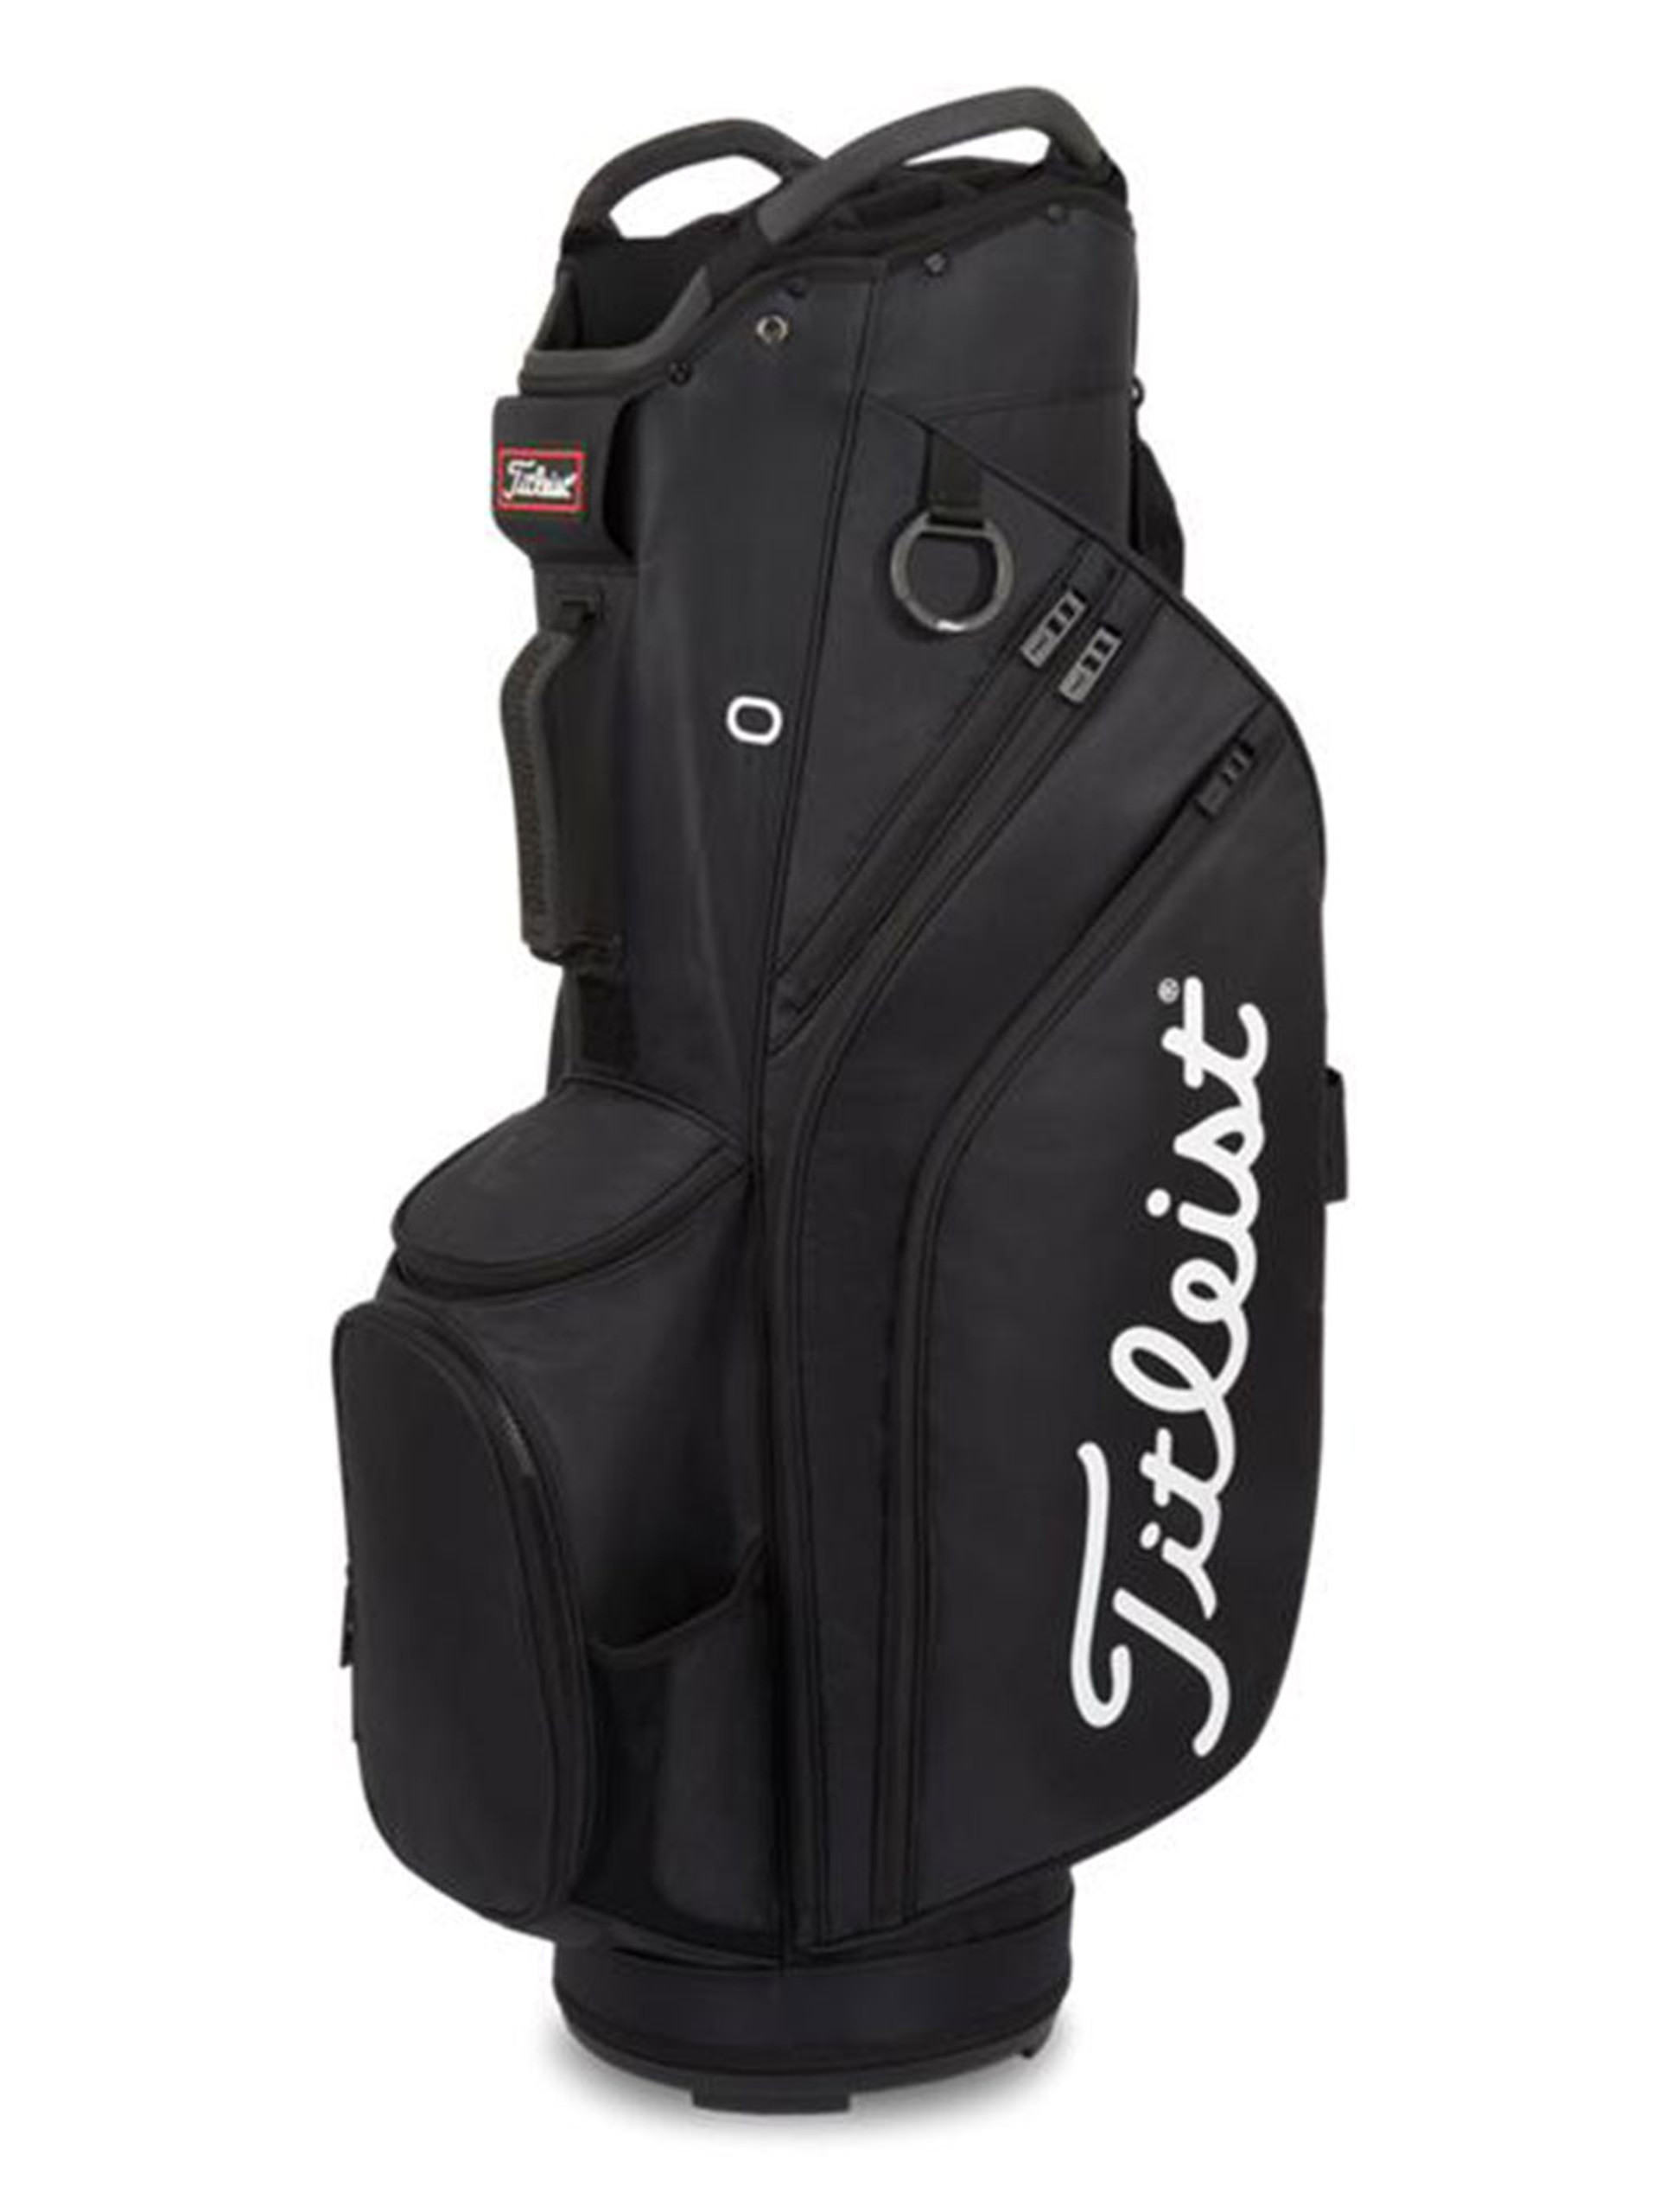 Titleist Cart 14 Golf Cart Bag | GolfBox